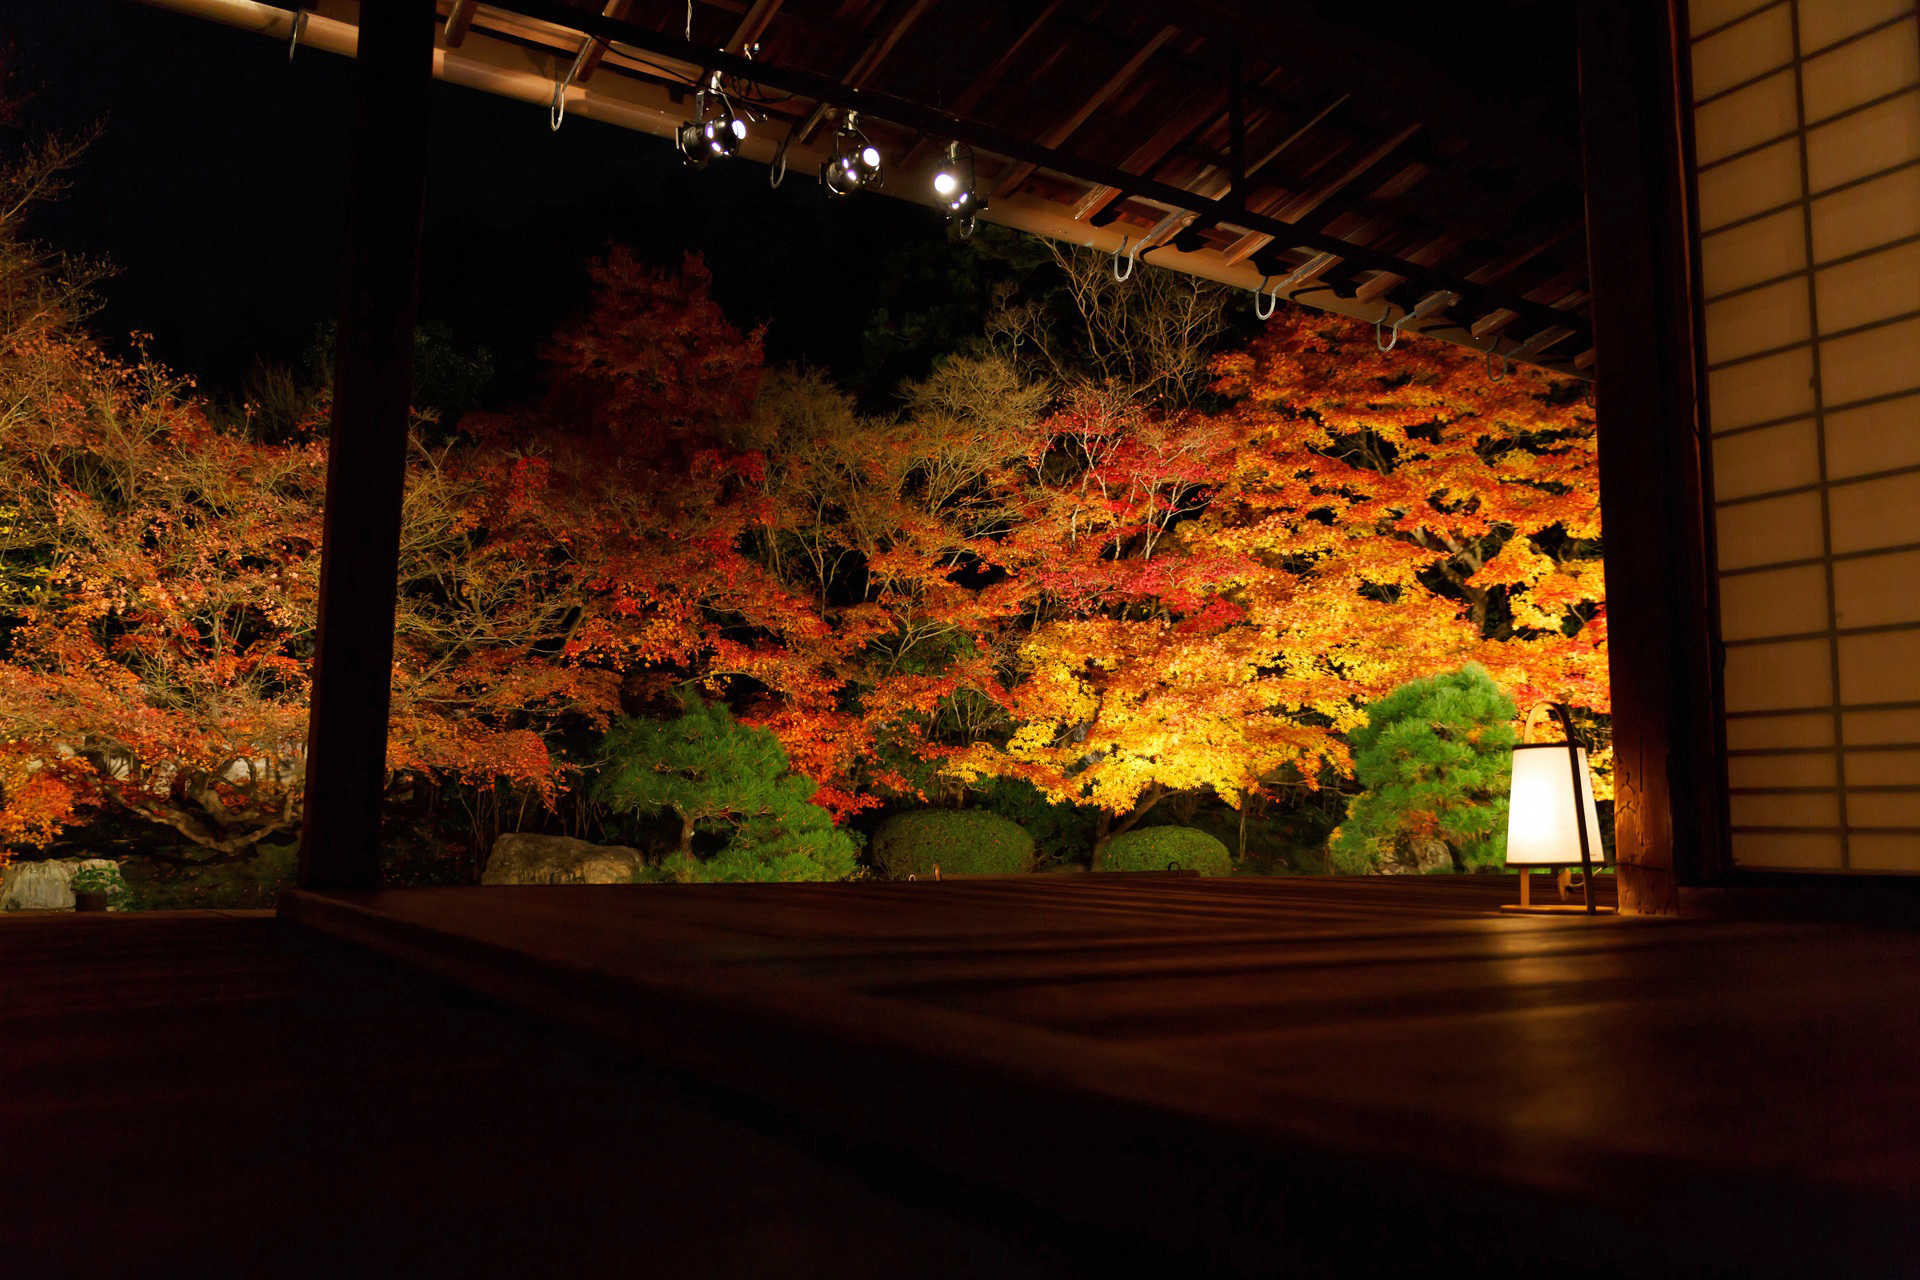 夜景 花火 イルミ 紅葉の京都 南禅寺 天授庵 壁紙19x1280 壁紙館